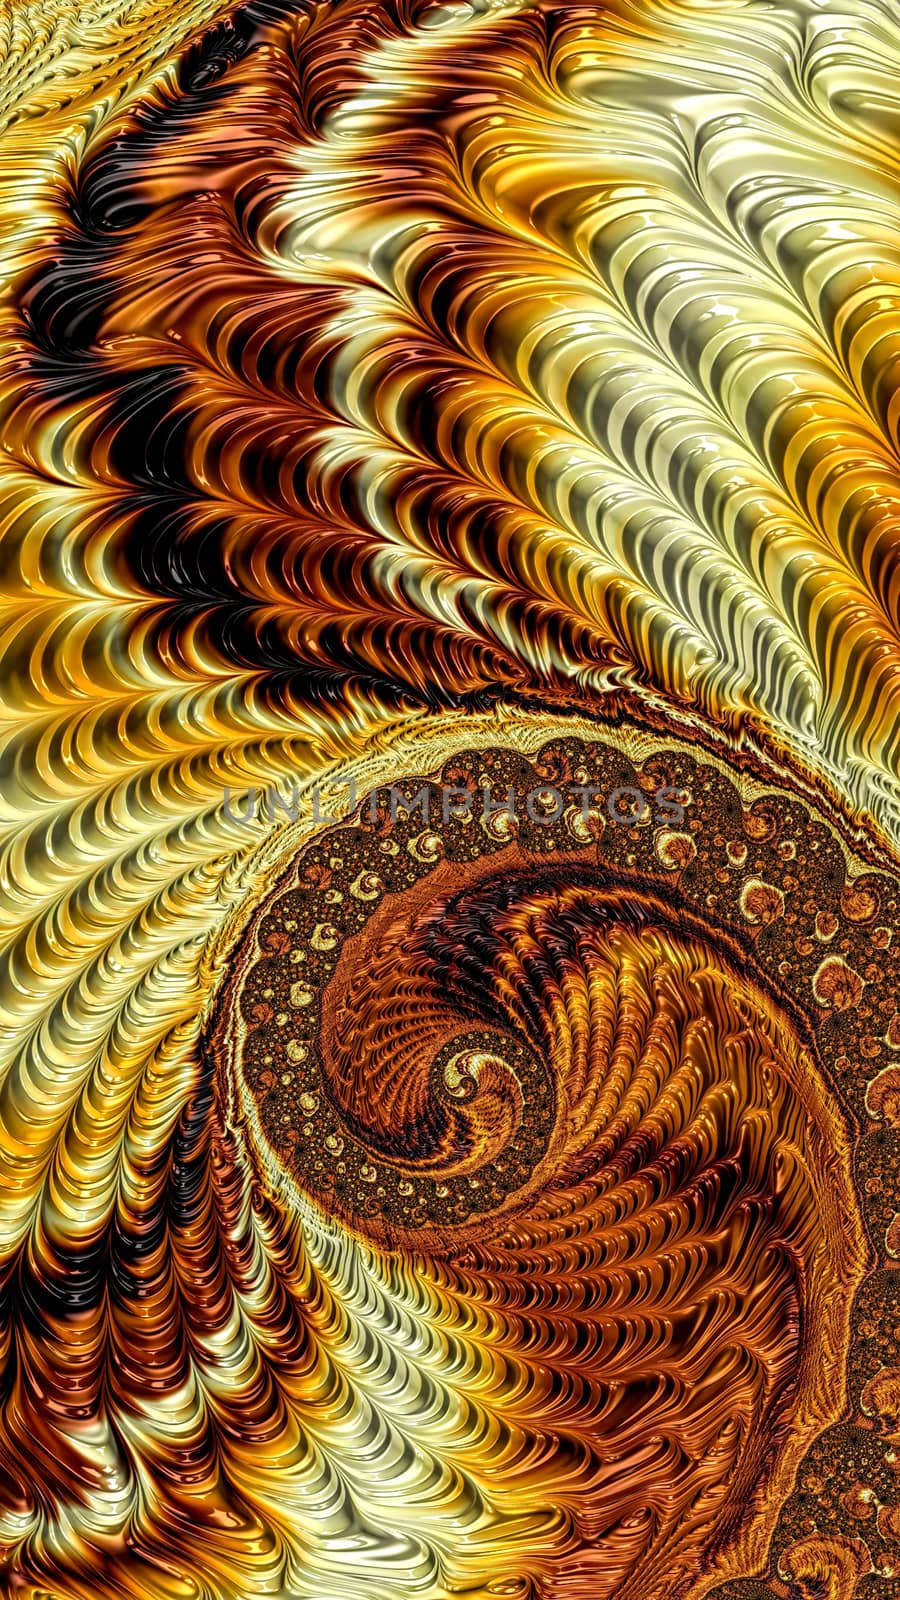 Fractal spiral background - digitally generated image by olgasalt